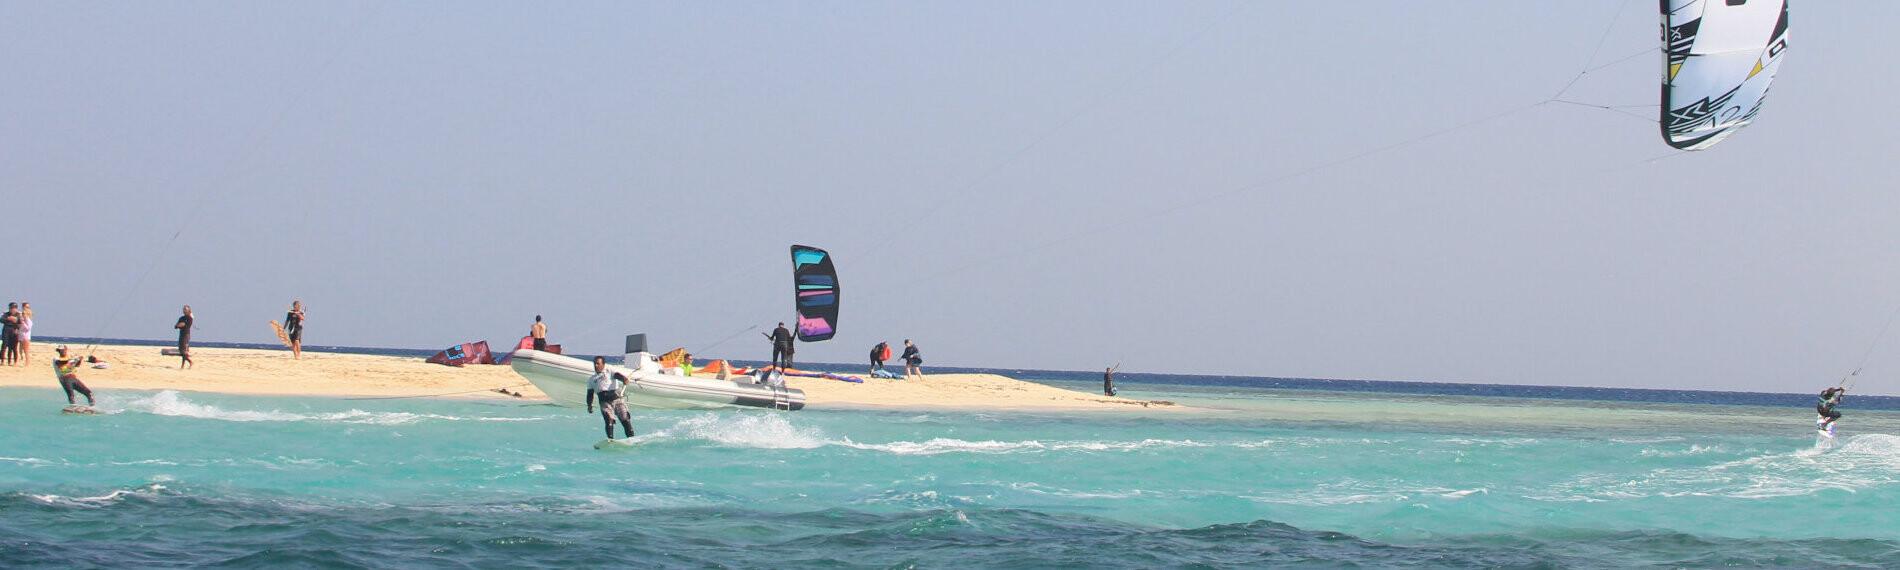 Kitesurfer Soma Bay Ägypten über blauem Wasser, Sandbank im Hintergrund.